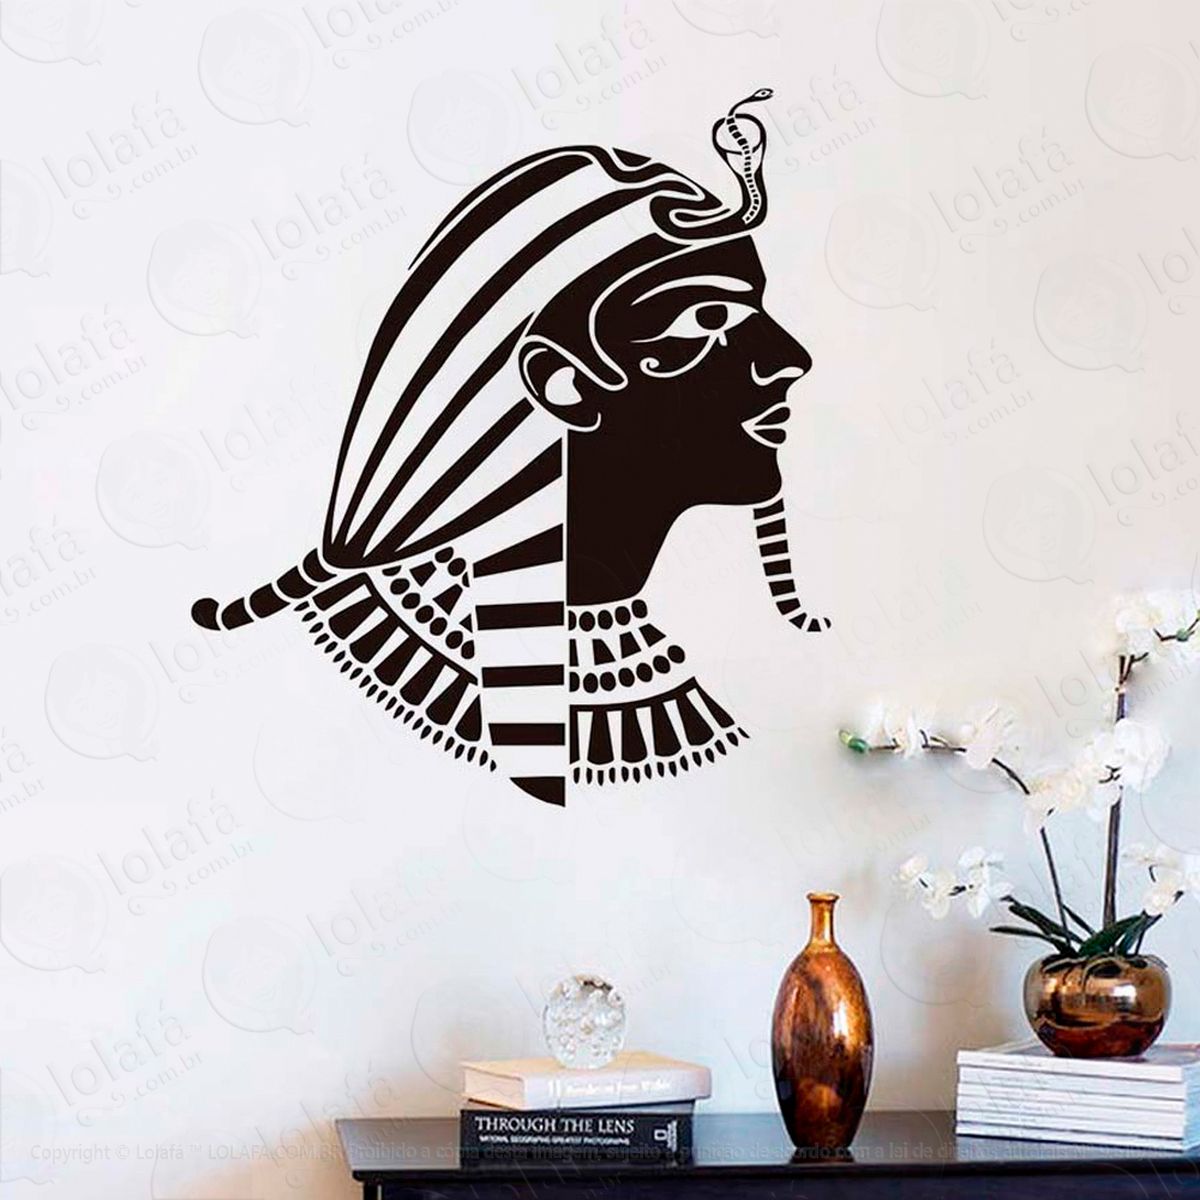 faraó egípcio adesivo de parede decorativo para casa, sala, quarto e vidro - mod:46